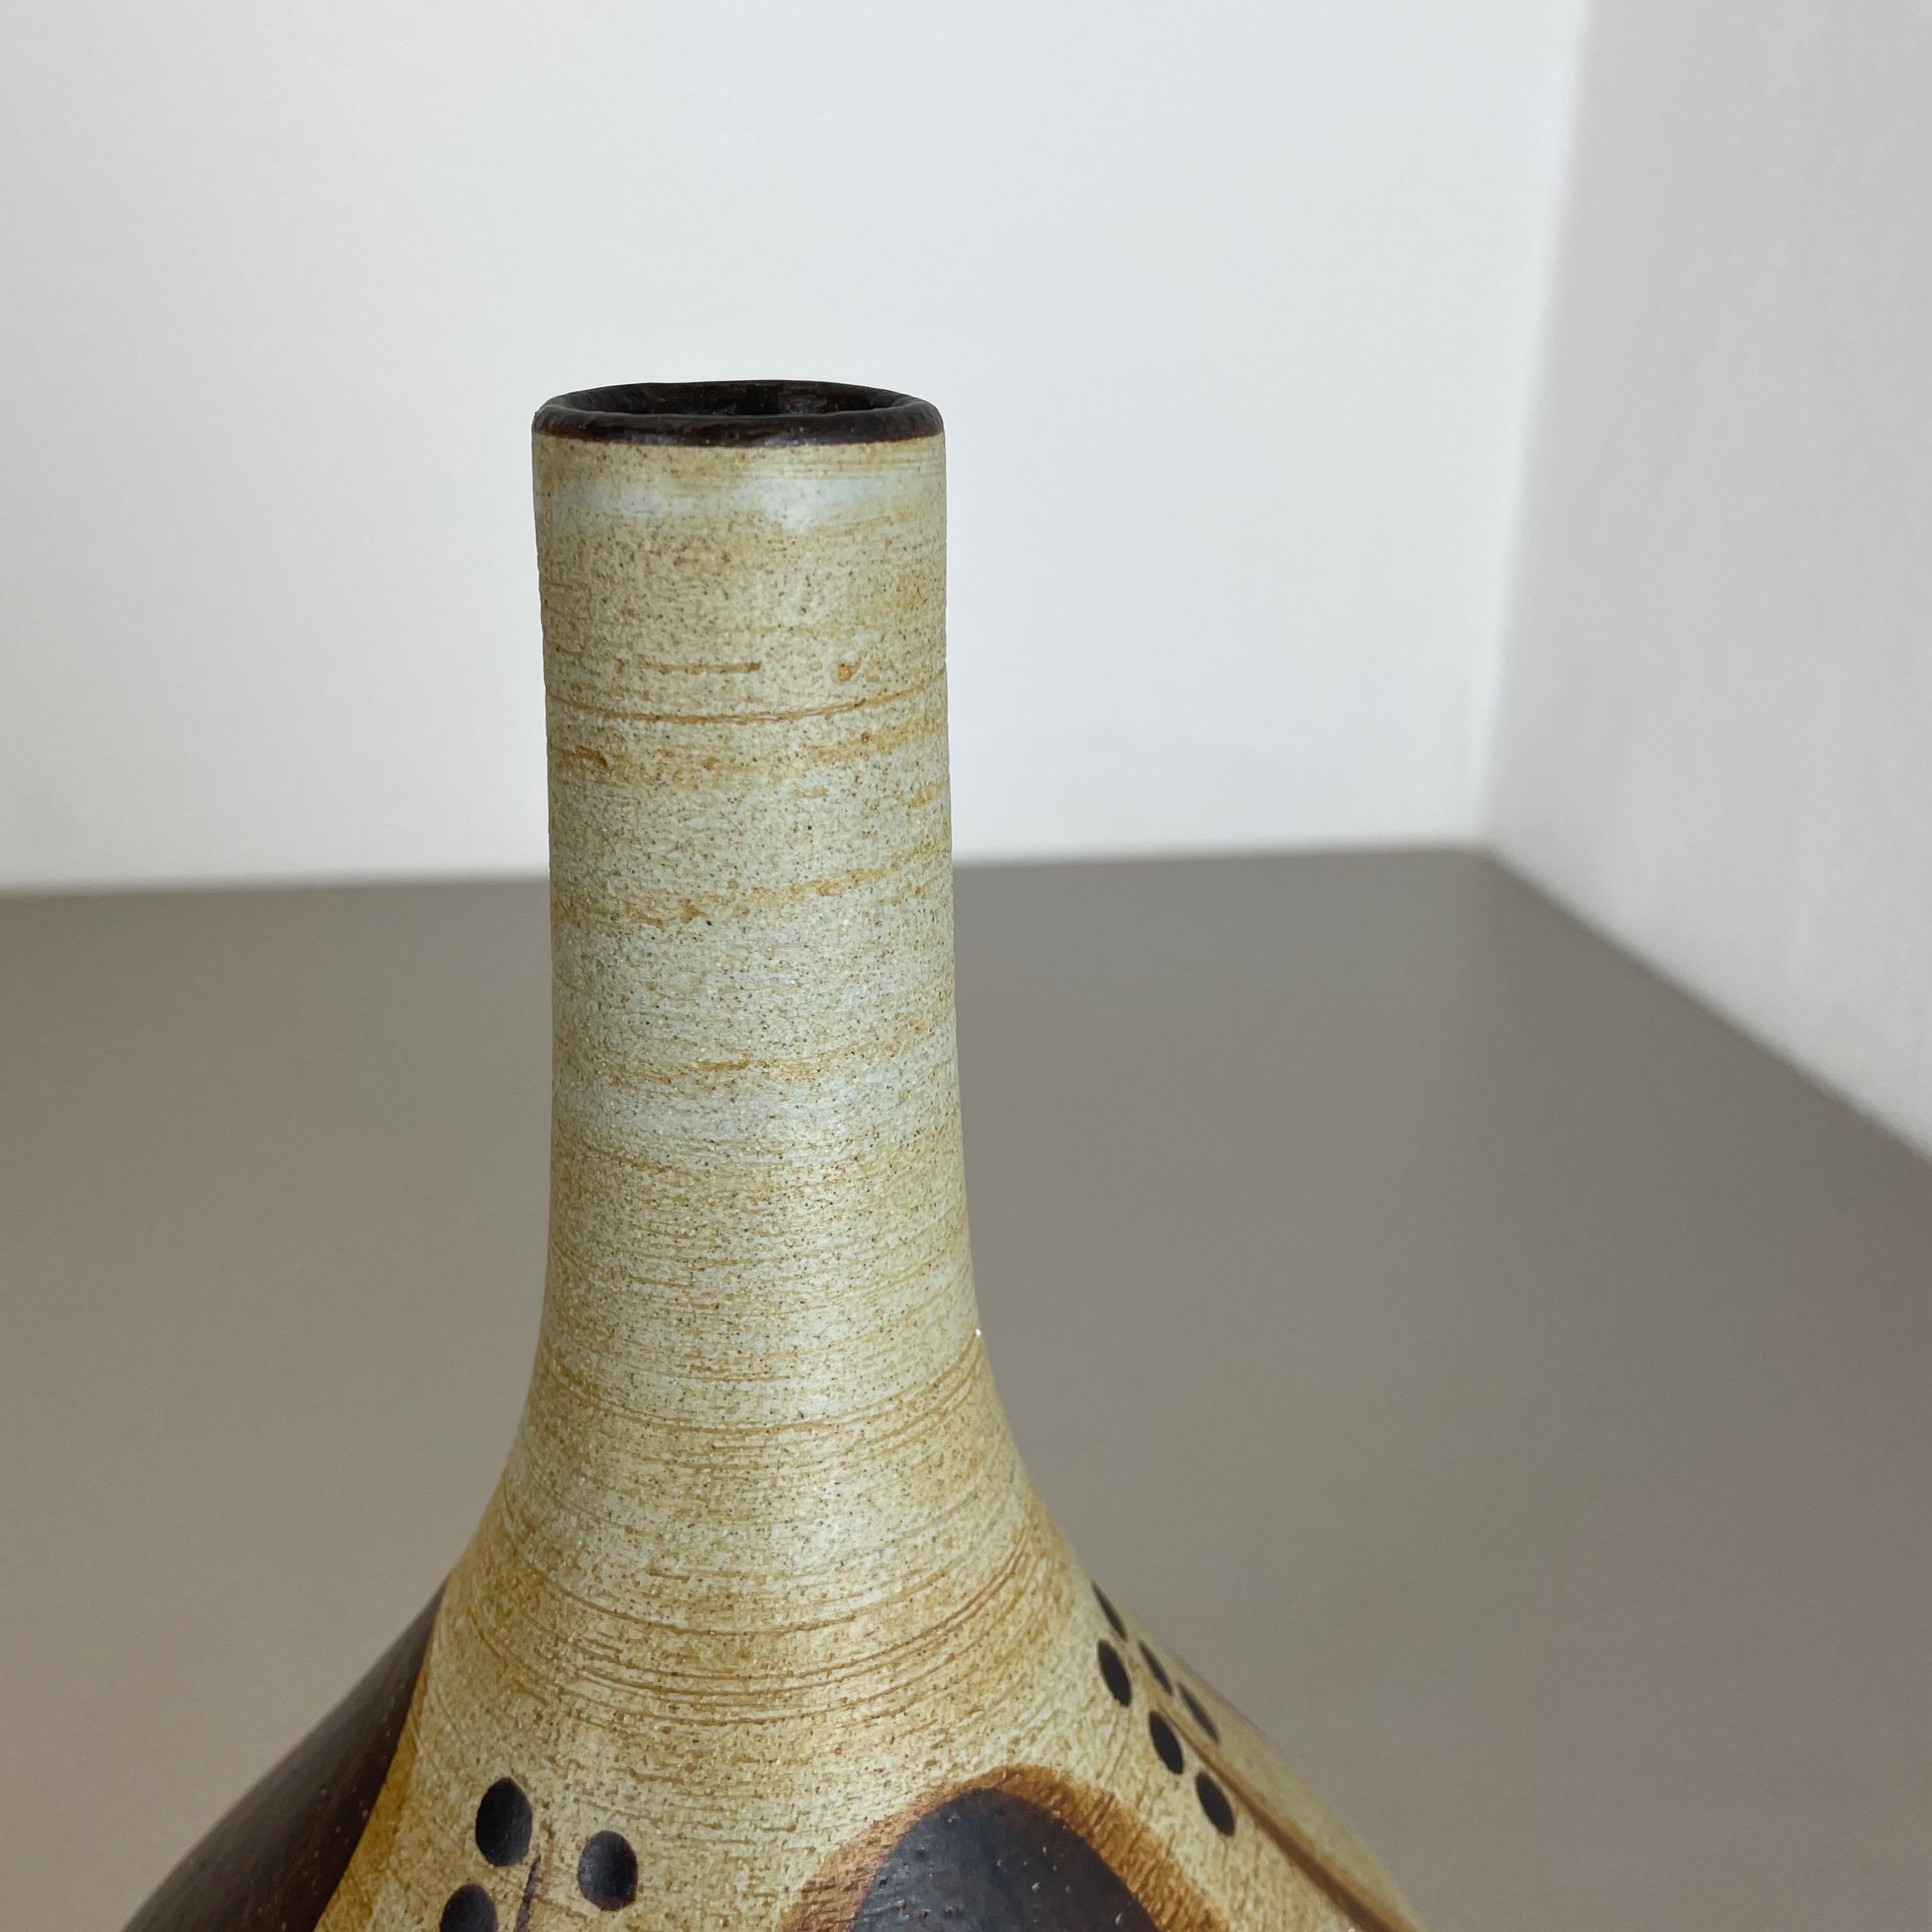 Modernist Vase Sculpture Peter Müller for Sgrafo Modern, Germany, 1970 For Sale 2